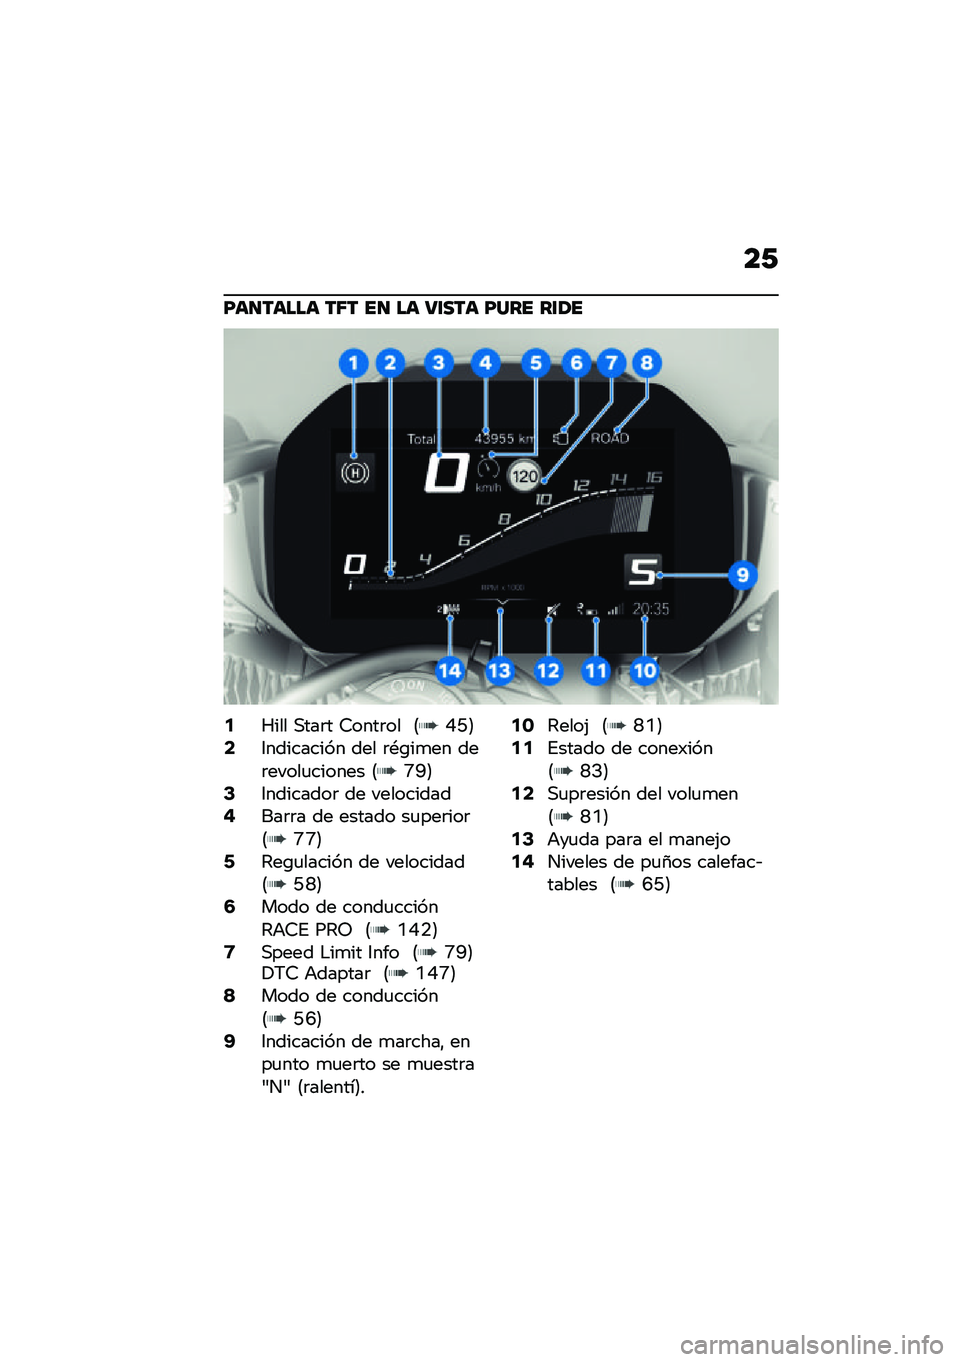 BMW MOTORRAD M 1000 RR 2021  Manual de instrucciones (in Spanish) ��/
�F��
����� ��6� ��
 �� �8�\f��� �F��� ��\f�1�
�2�S��� �,���	� �7����	�� �8�I�G�9�4�3��������� ��� �	�*�\b��
�� ���	�����
������ �8�P�Q�9�6